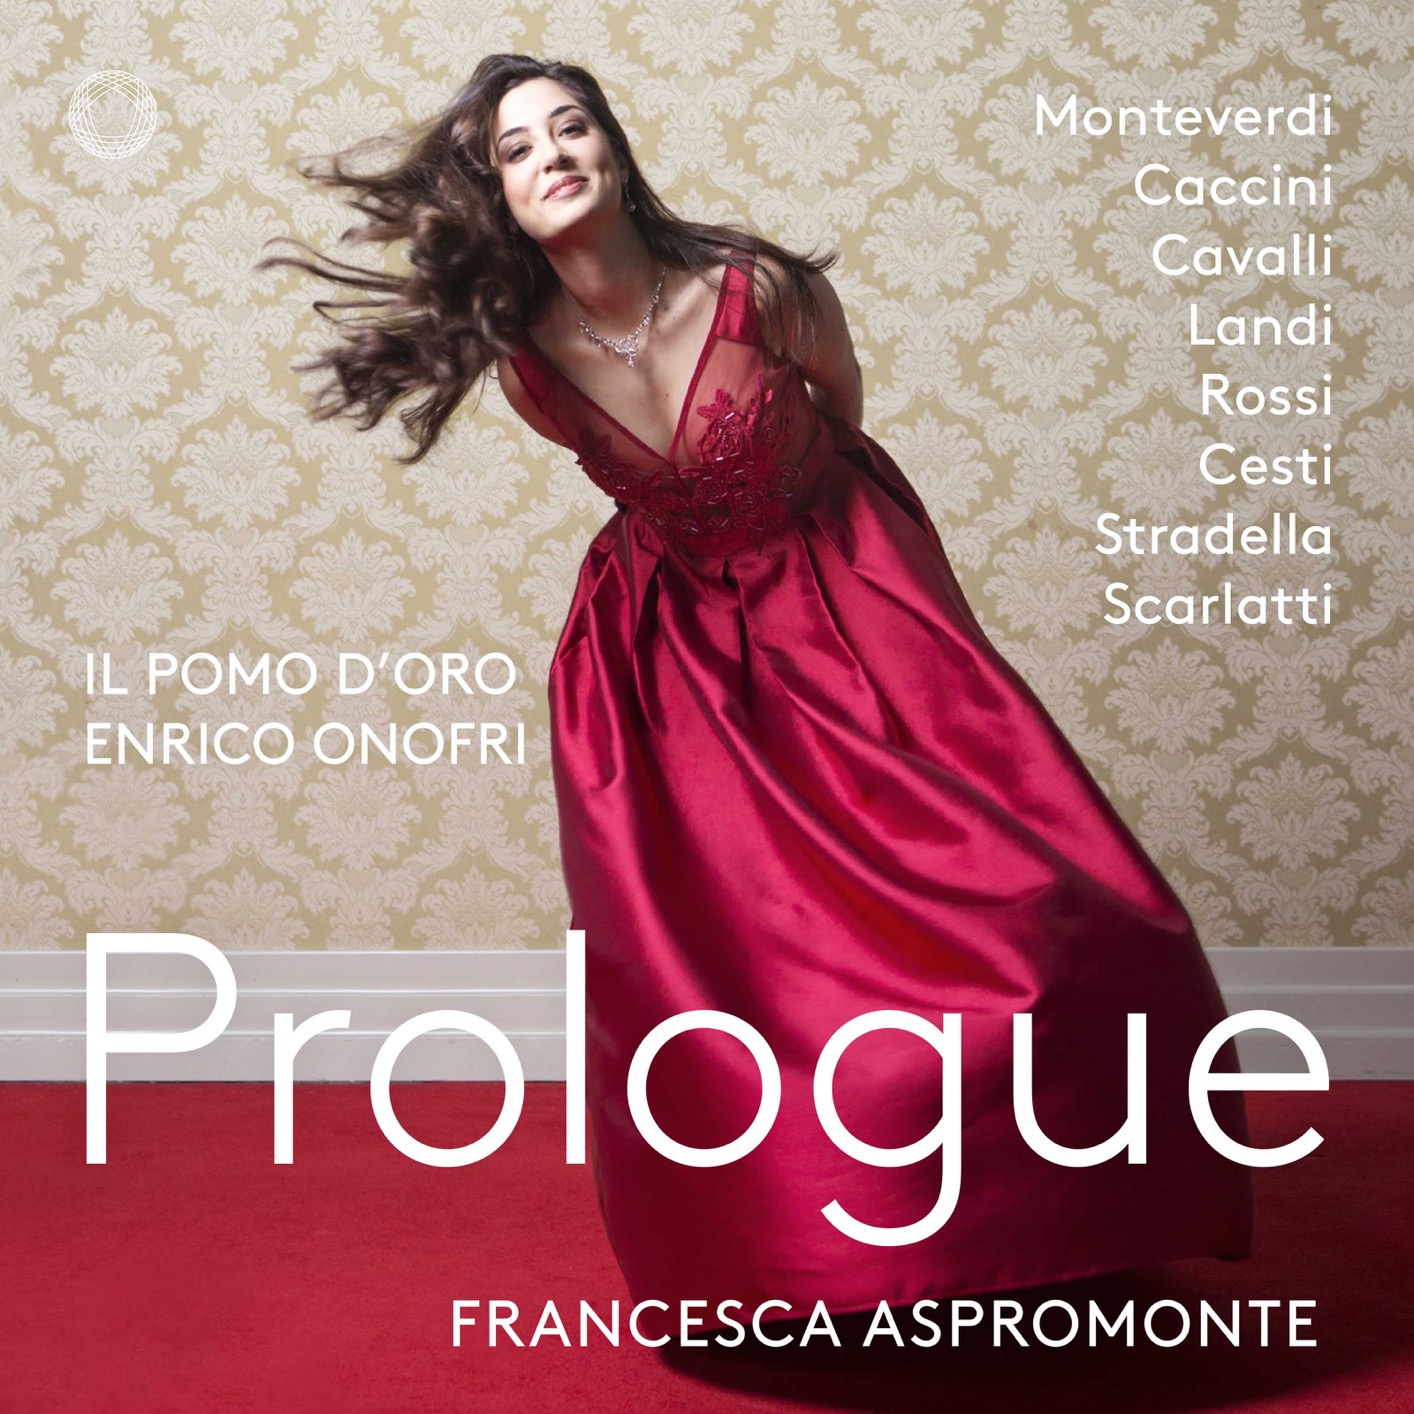 Francesca Aspromonte & il pomo d’oro - Prologue (2018) [FLAC 24bit/96kHz]